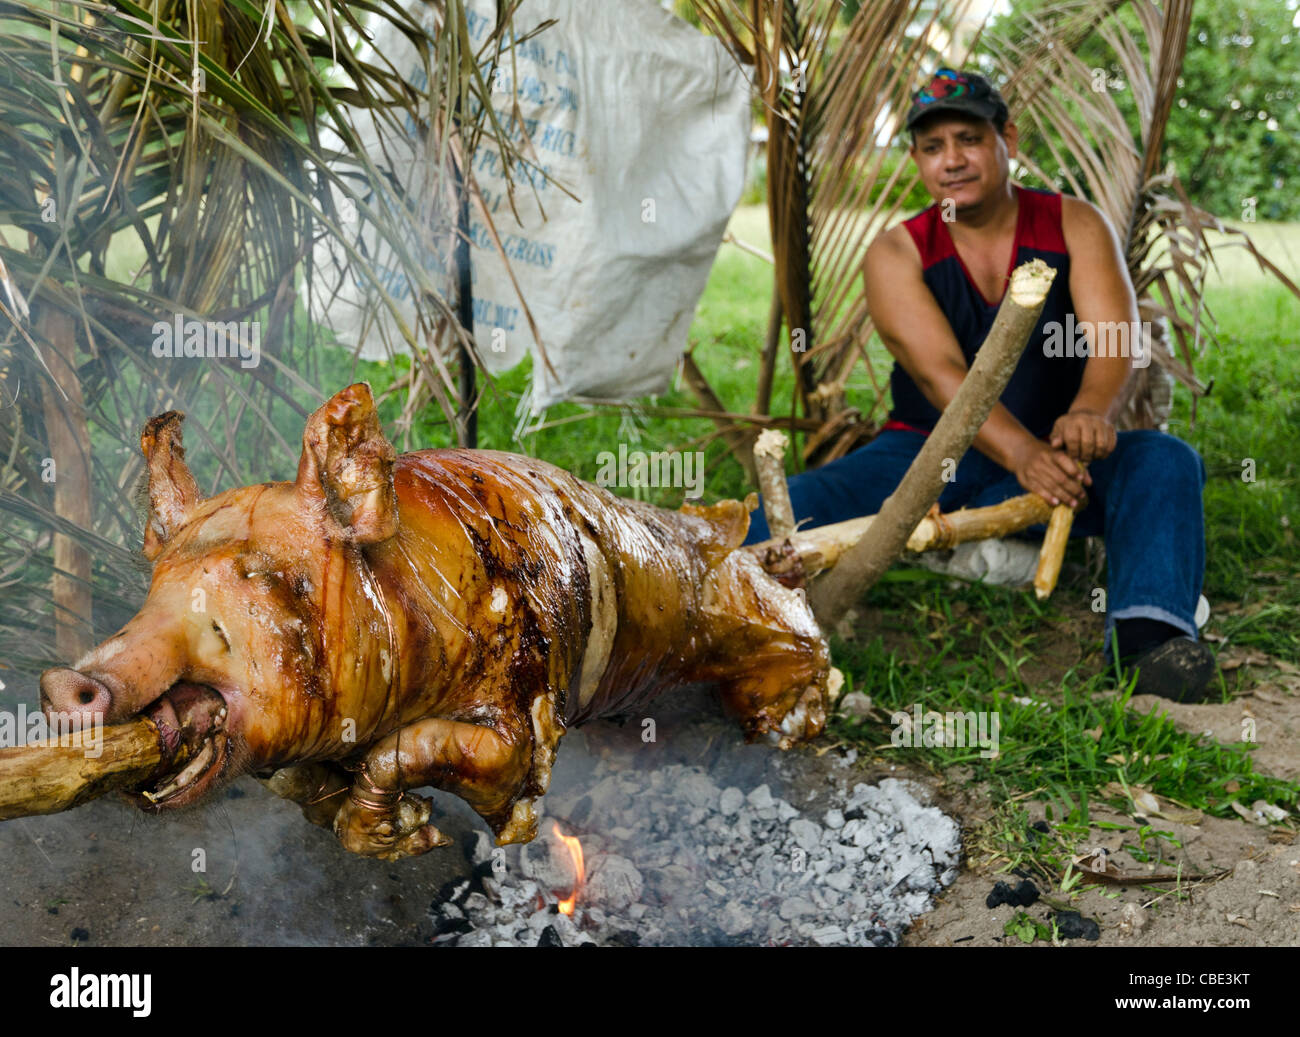 Traditionelles Kubanisches Essen Stockfotos und -bilder Kaufen - Alamy